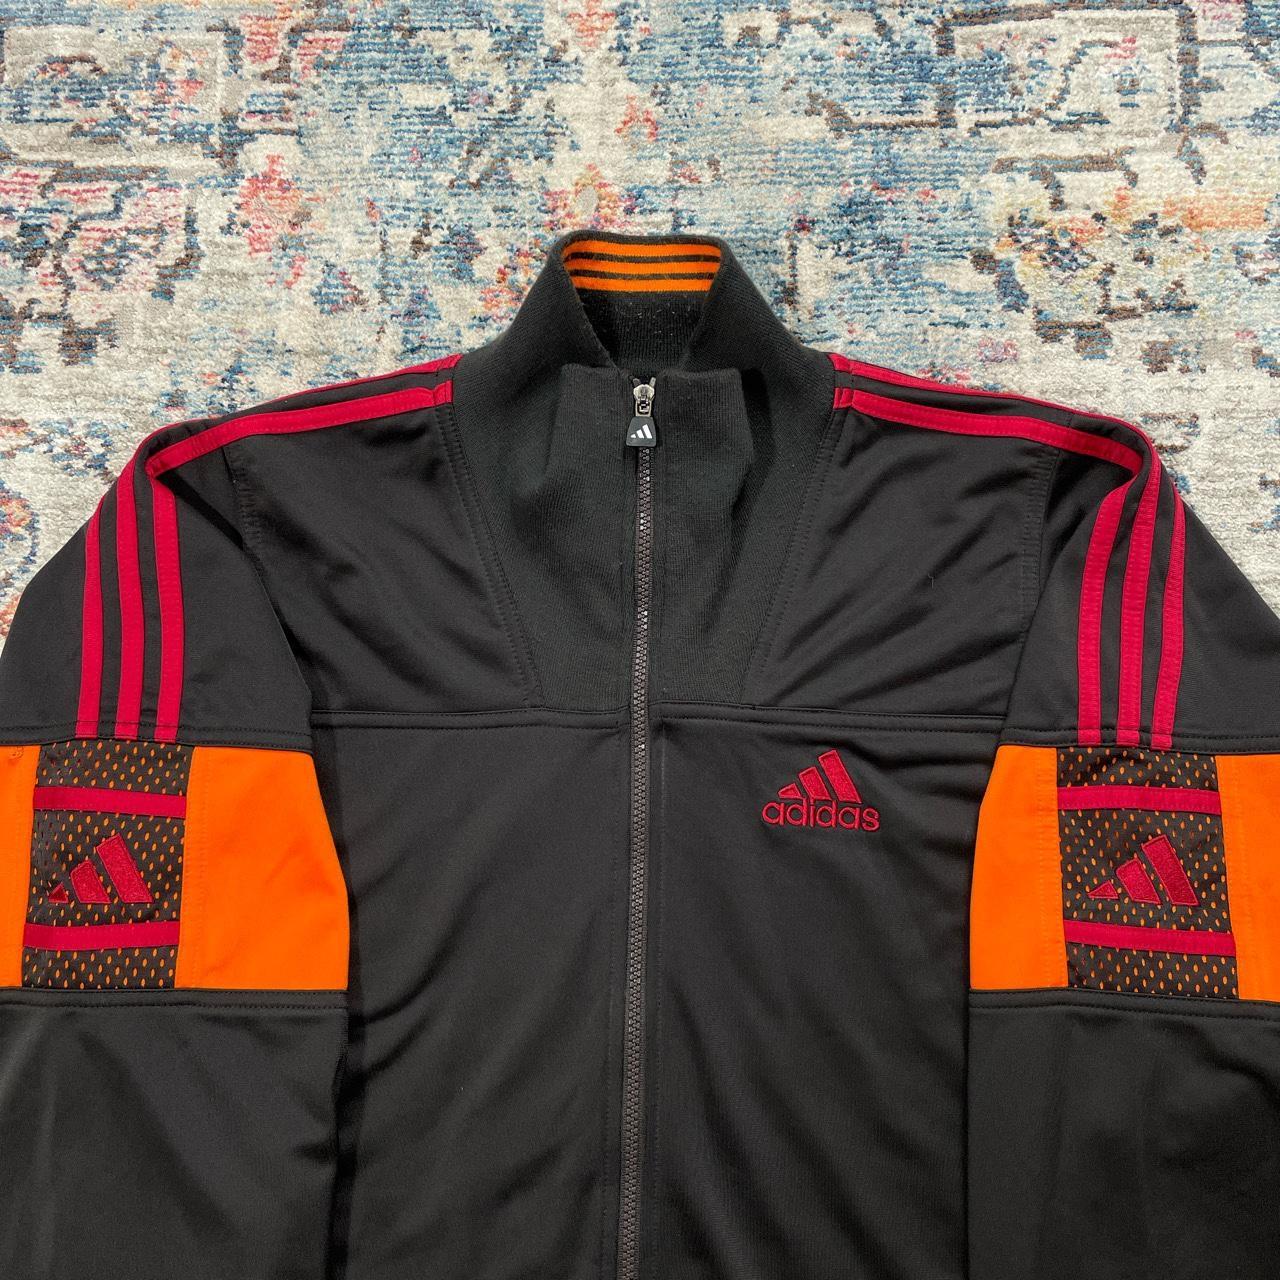 Vintage Adidas Black and Orange Jacket